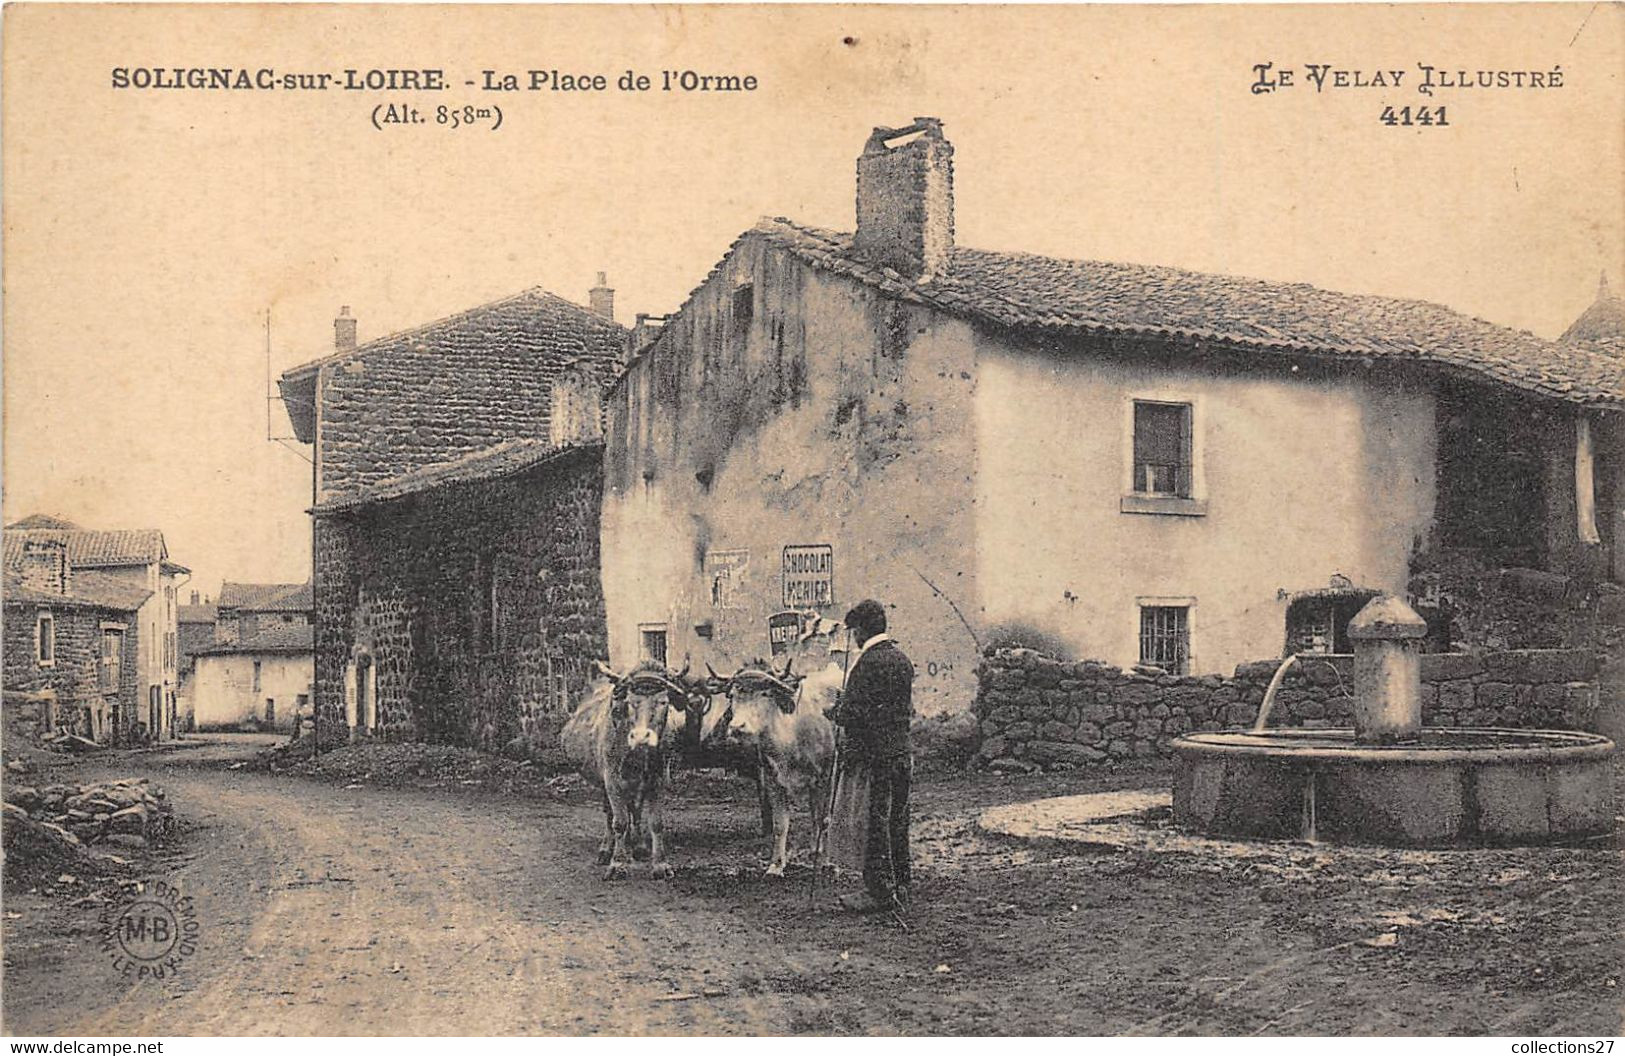 43-SOLIGNAC-SUR-LOIRE- LA PLACE DE L'ORME - Solignac Sur Loire